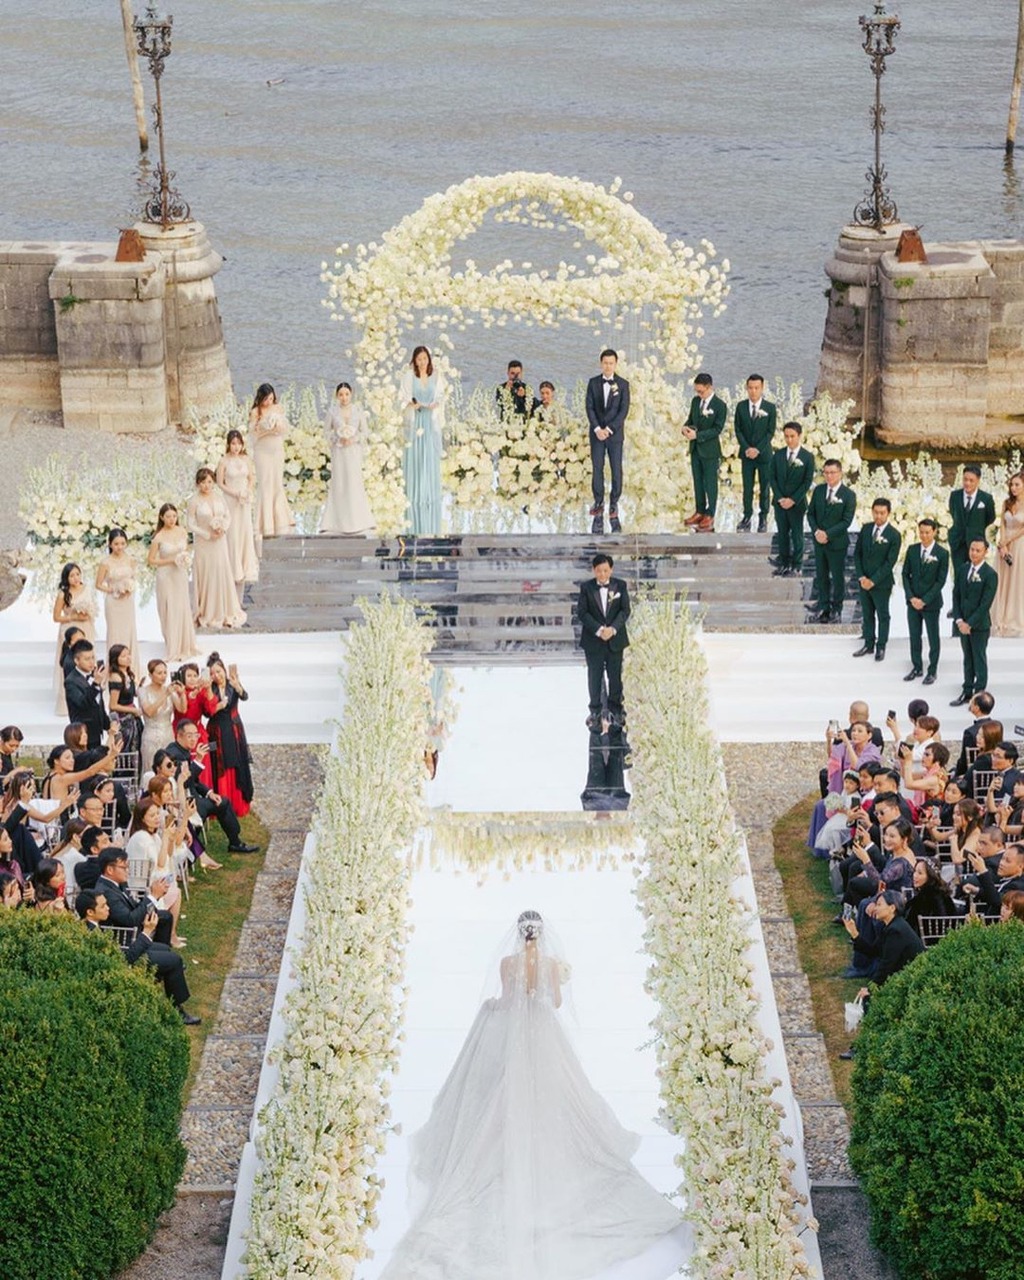 文咏珊的婚纱为澳洲婚纱品牌Paolo Sebastian的高订款式，要价约为65万元。